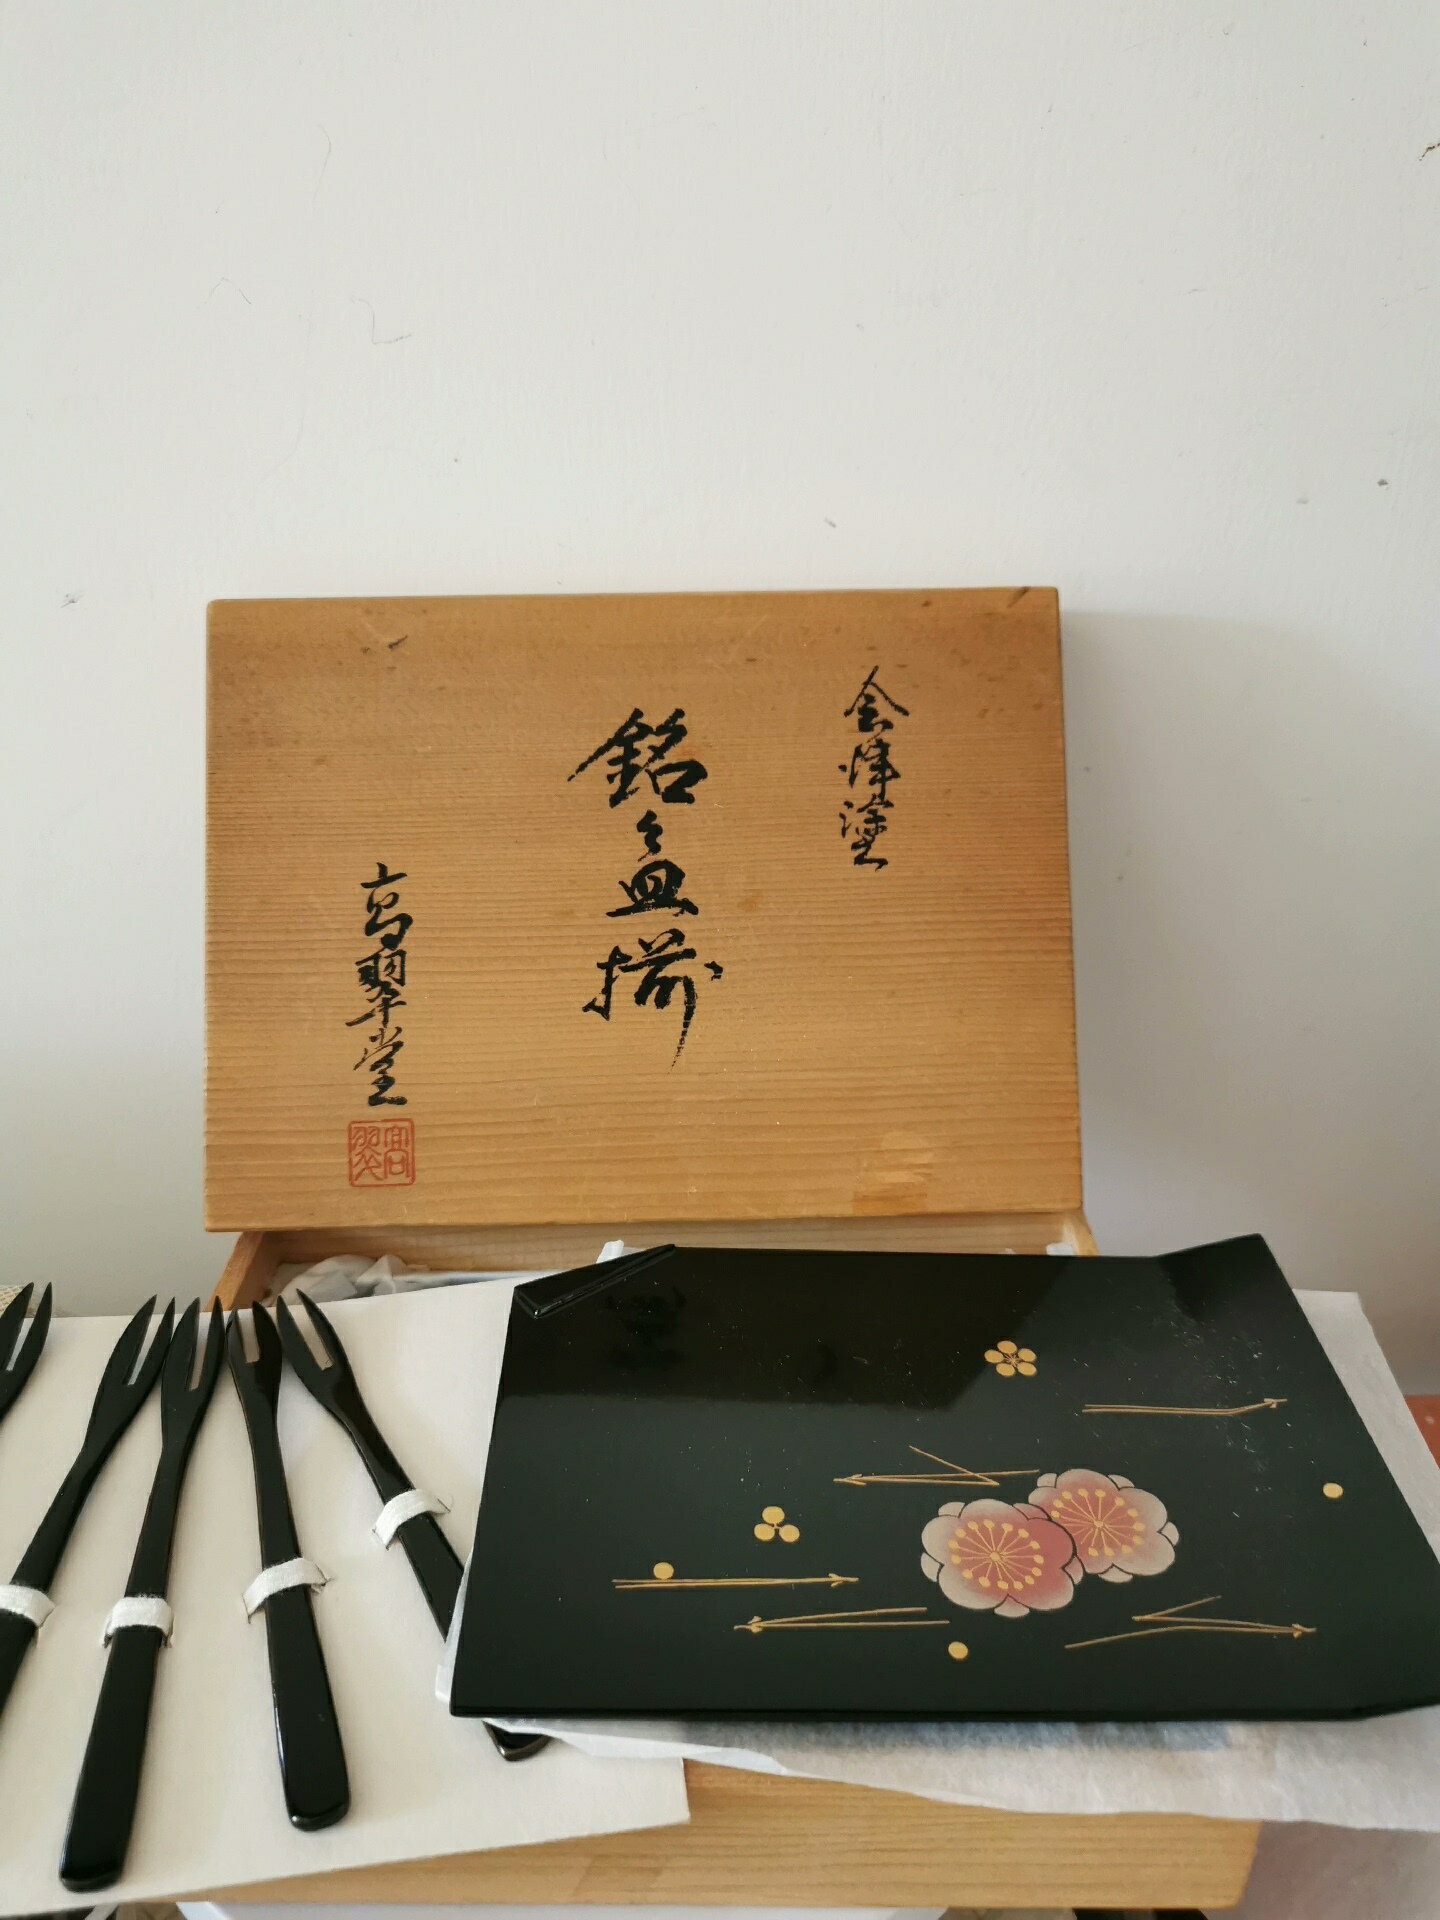 日本會津涂純木胎漆器蒔給餐盤果碟帶叉套組